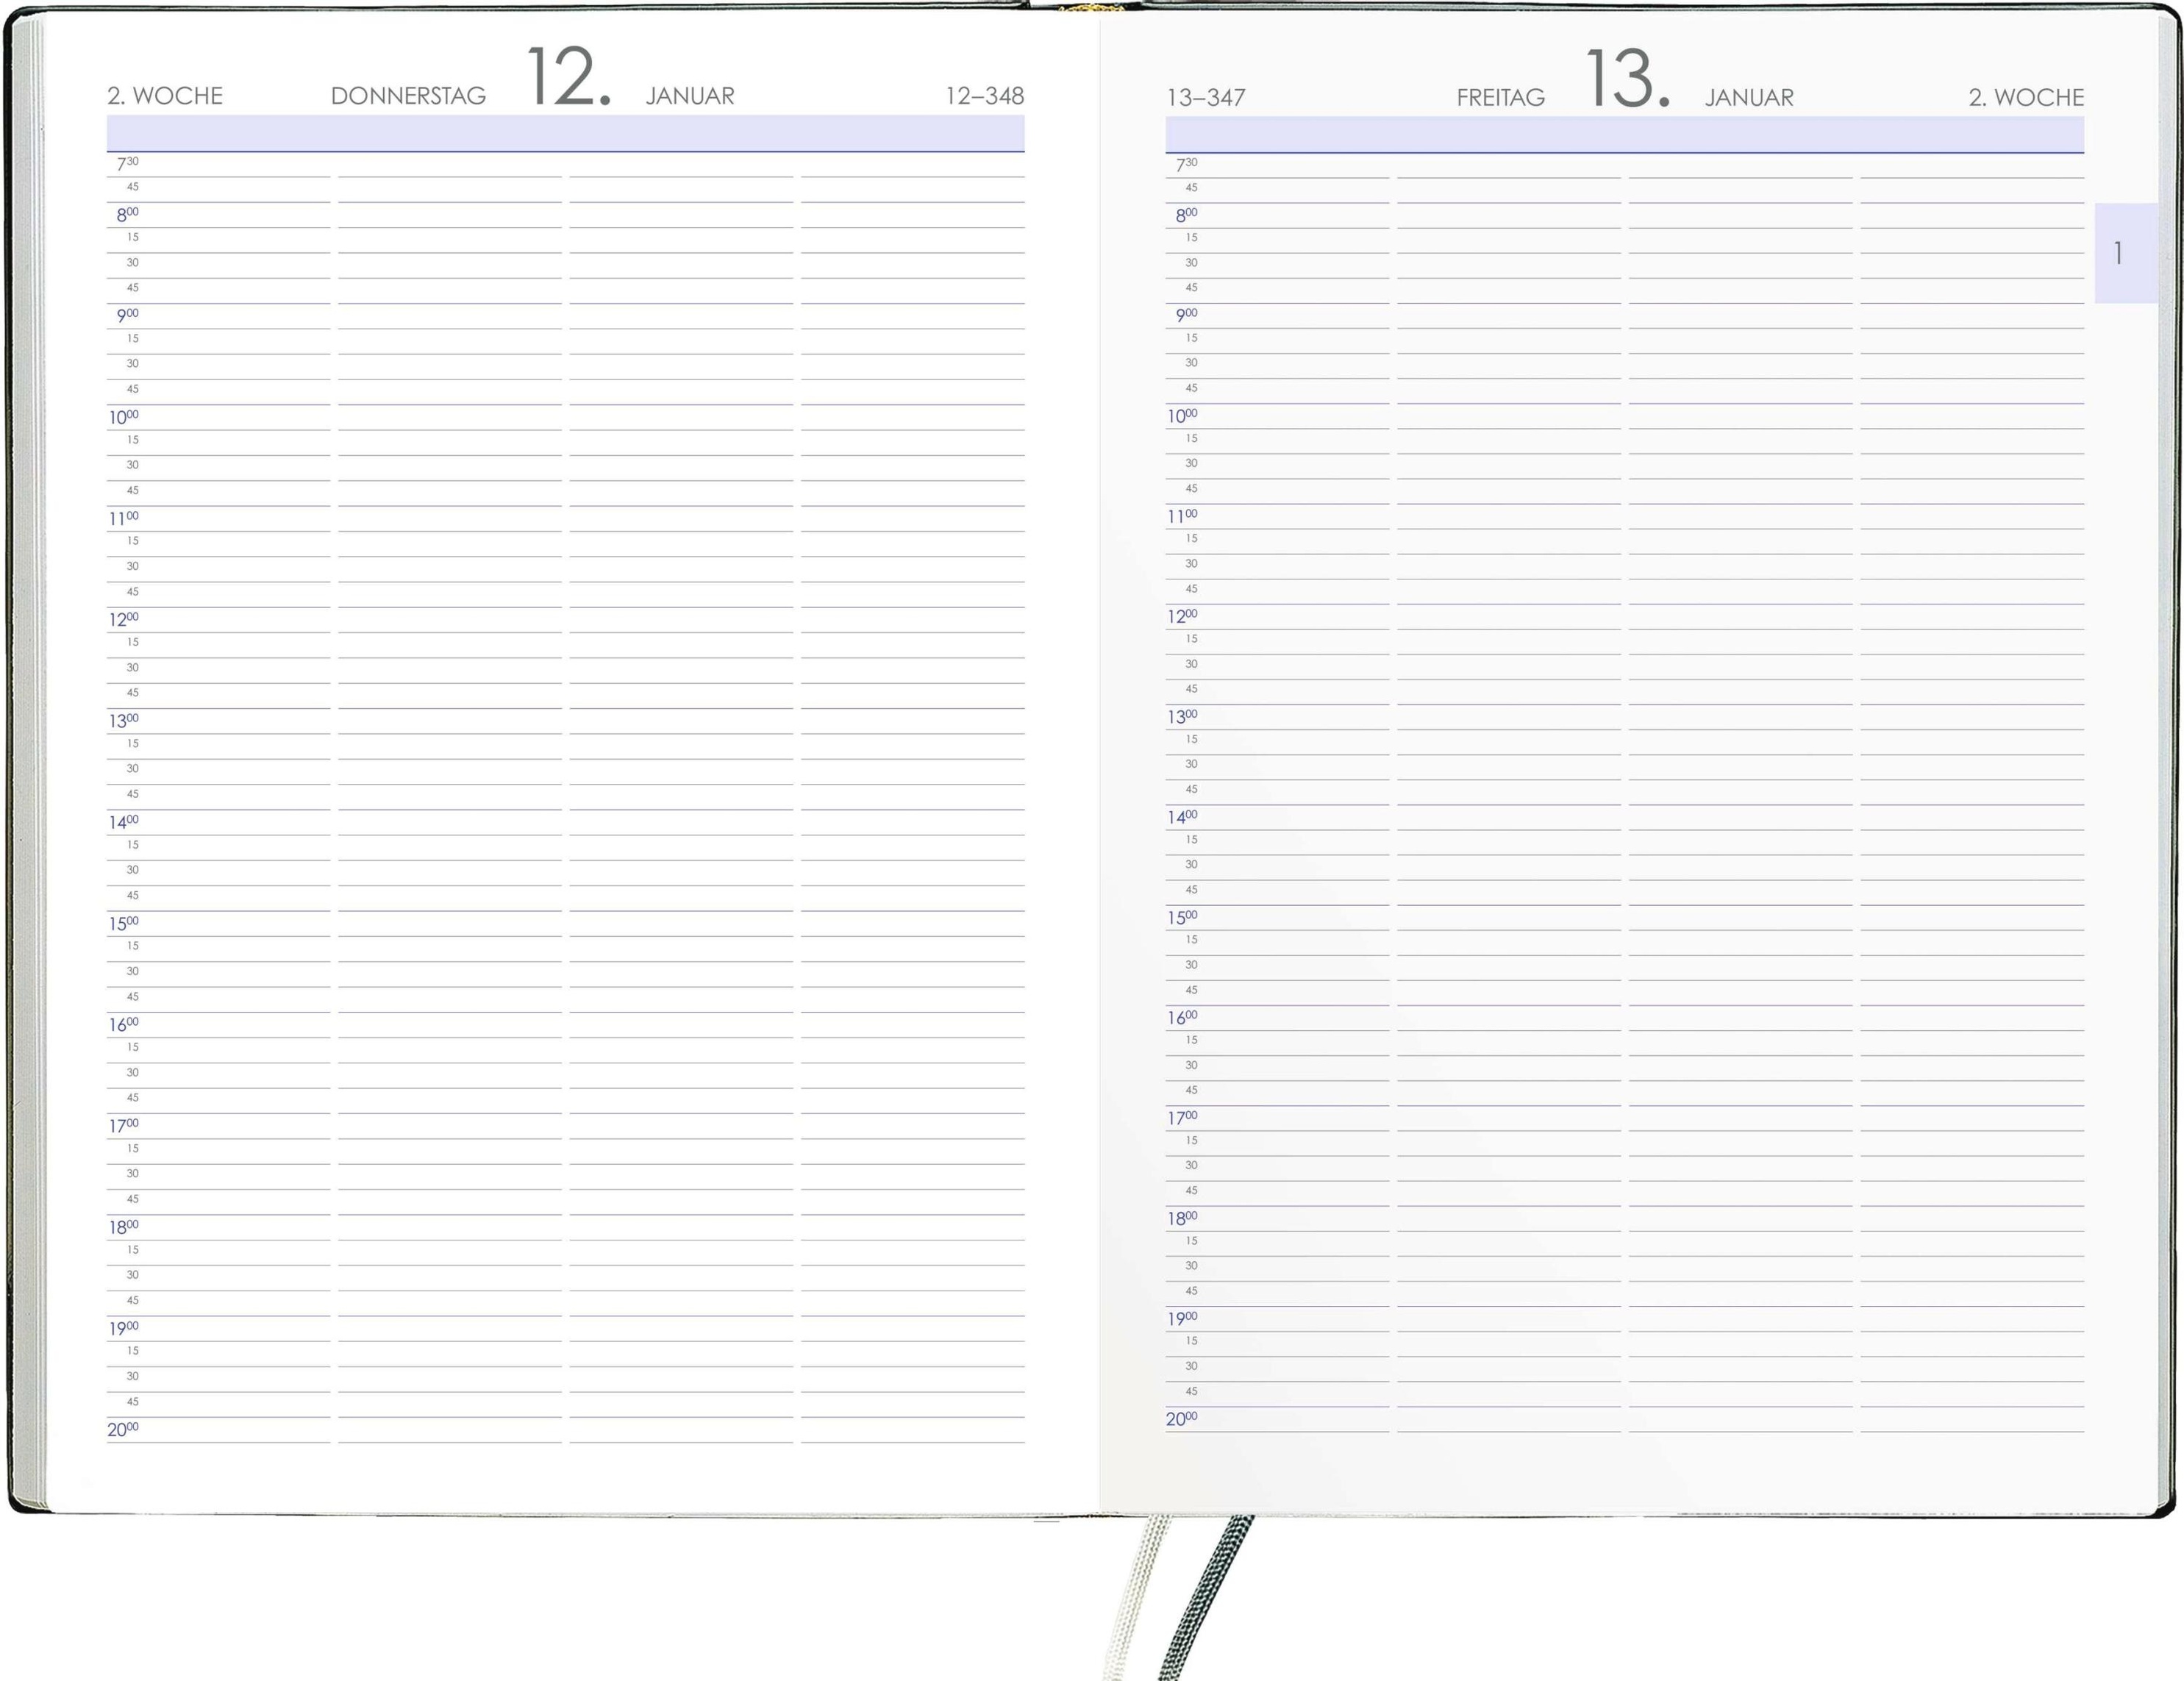 Terminbuch anthrazit 2024 - Bürokalender A4 21x29,7 cm - 1 Tag 1 Seite -  Einband wattiert - Viertelstundeneinteilung 7:30 - 20 Uhr - 886-0021 -  Kalender bestellen